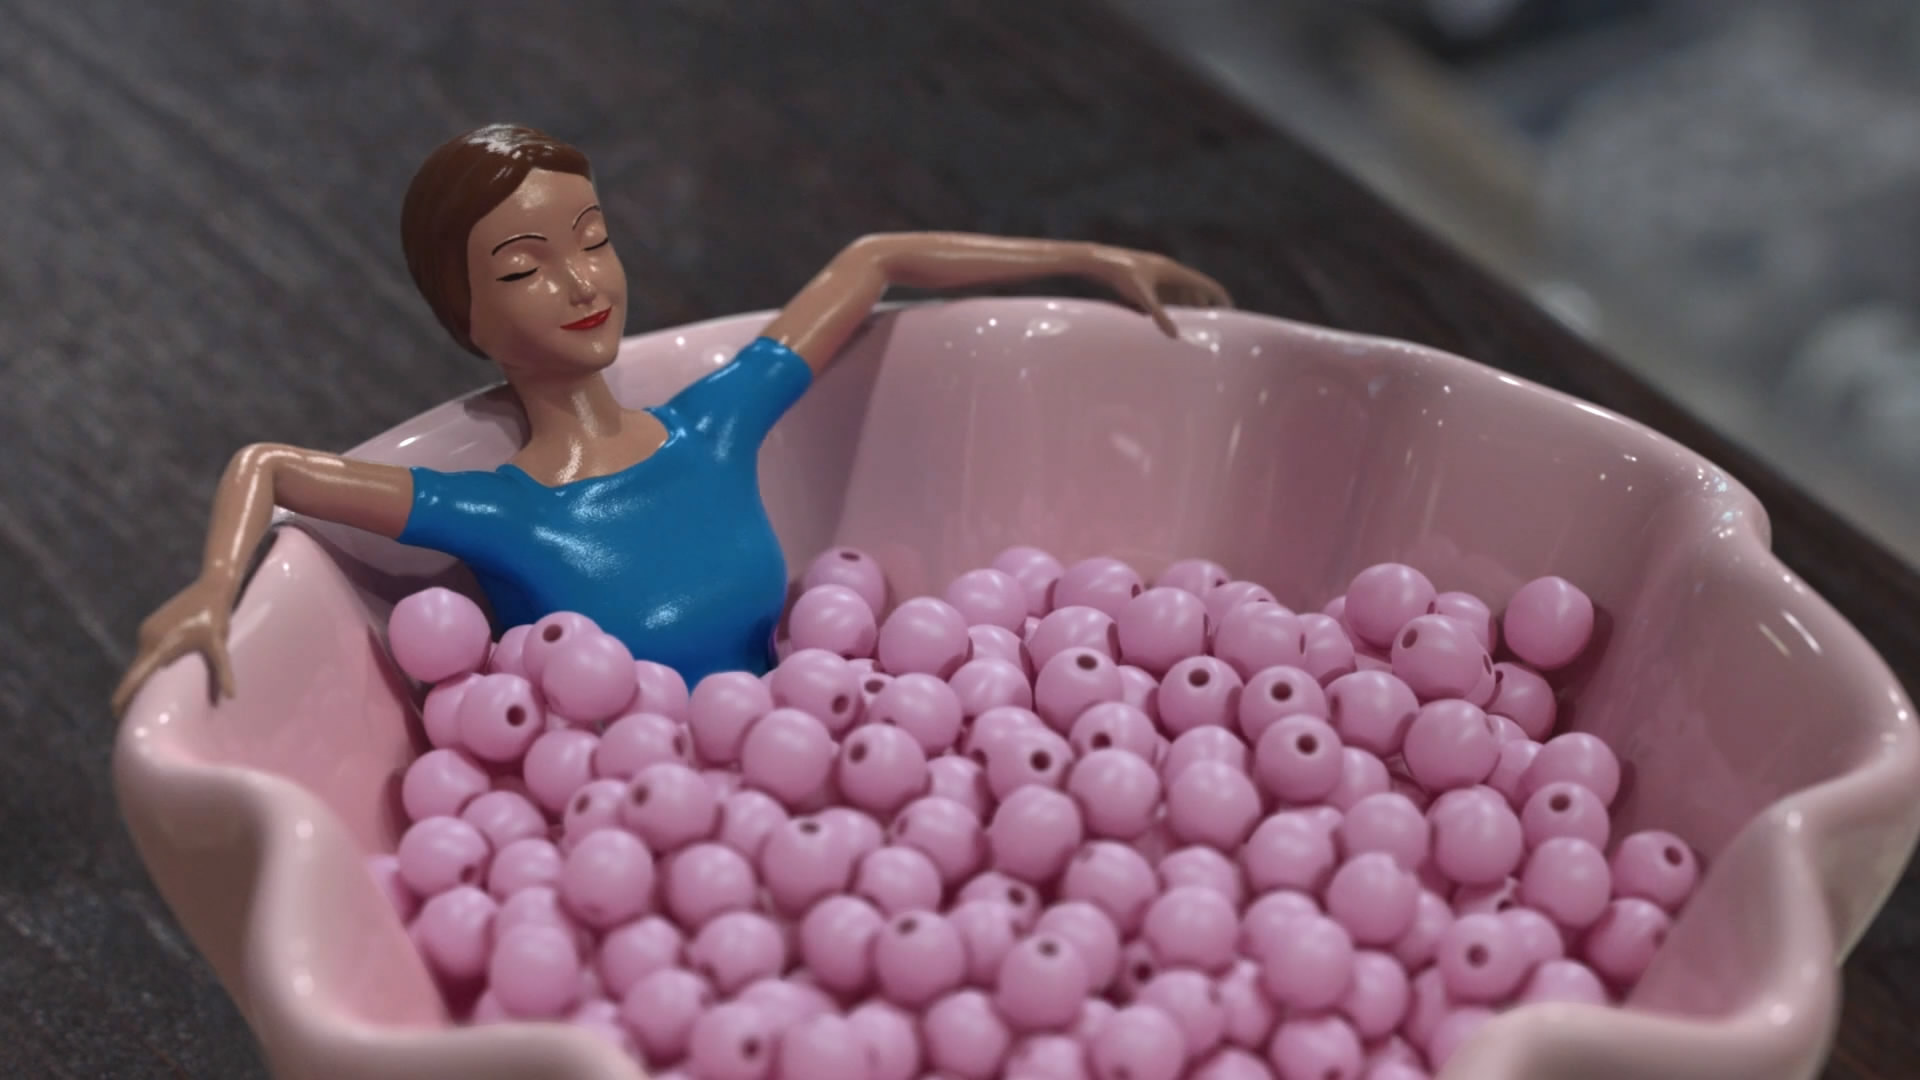 塑料玩具女孩在碗中泡澡